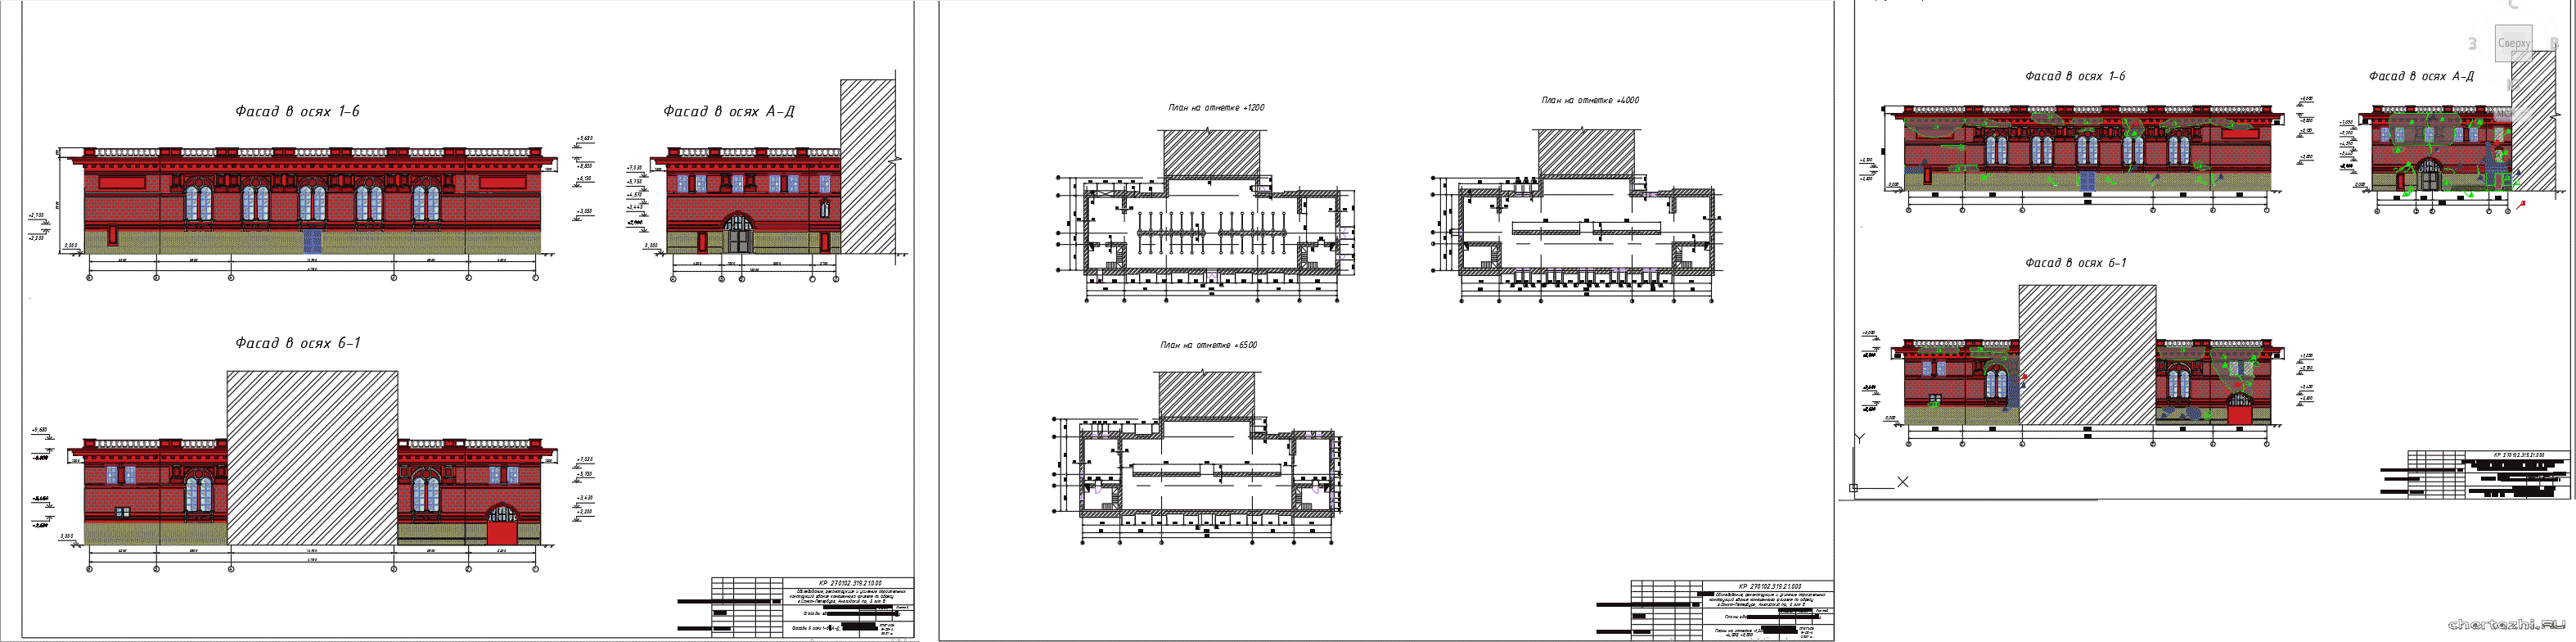 Курсовой проект - Обследование, реконструкция и усиление строительных конструкций здания конюшенного флигеля